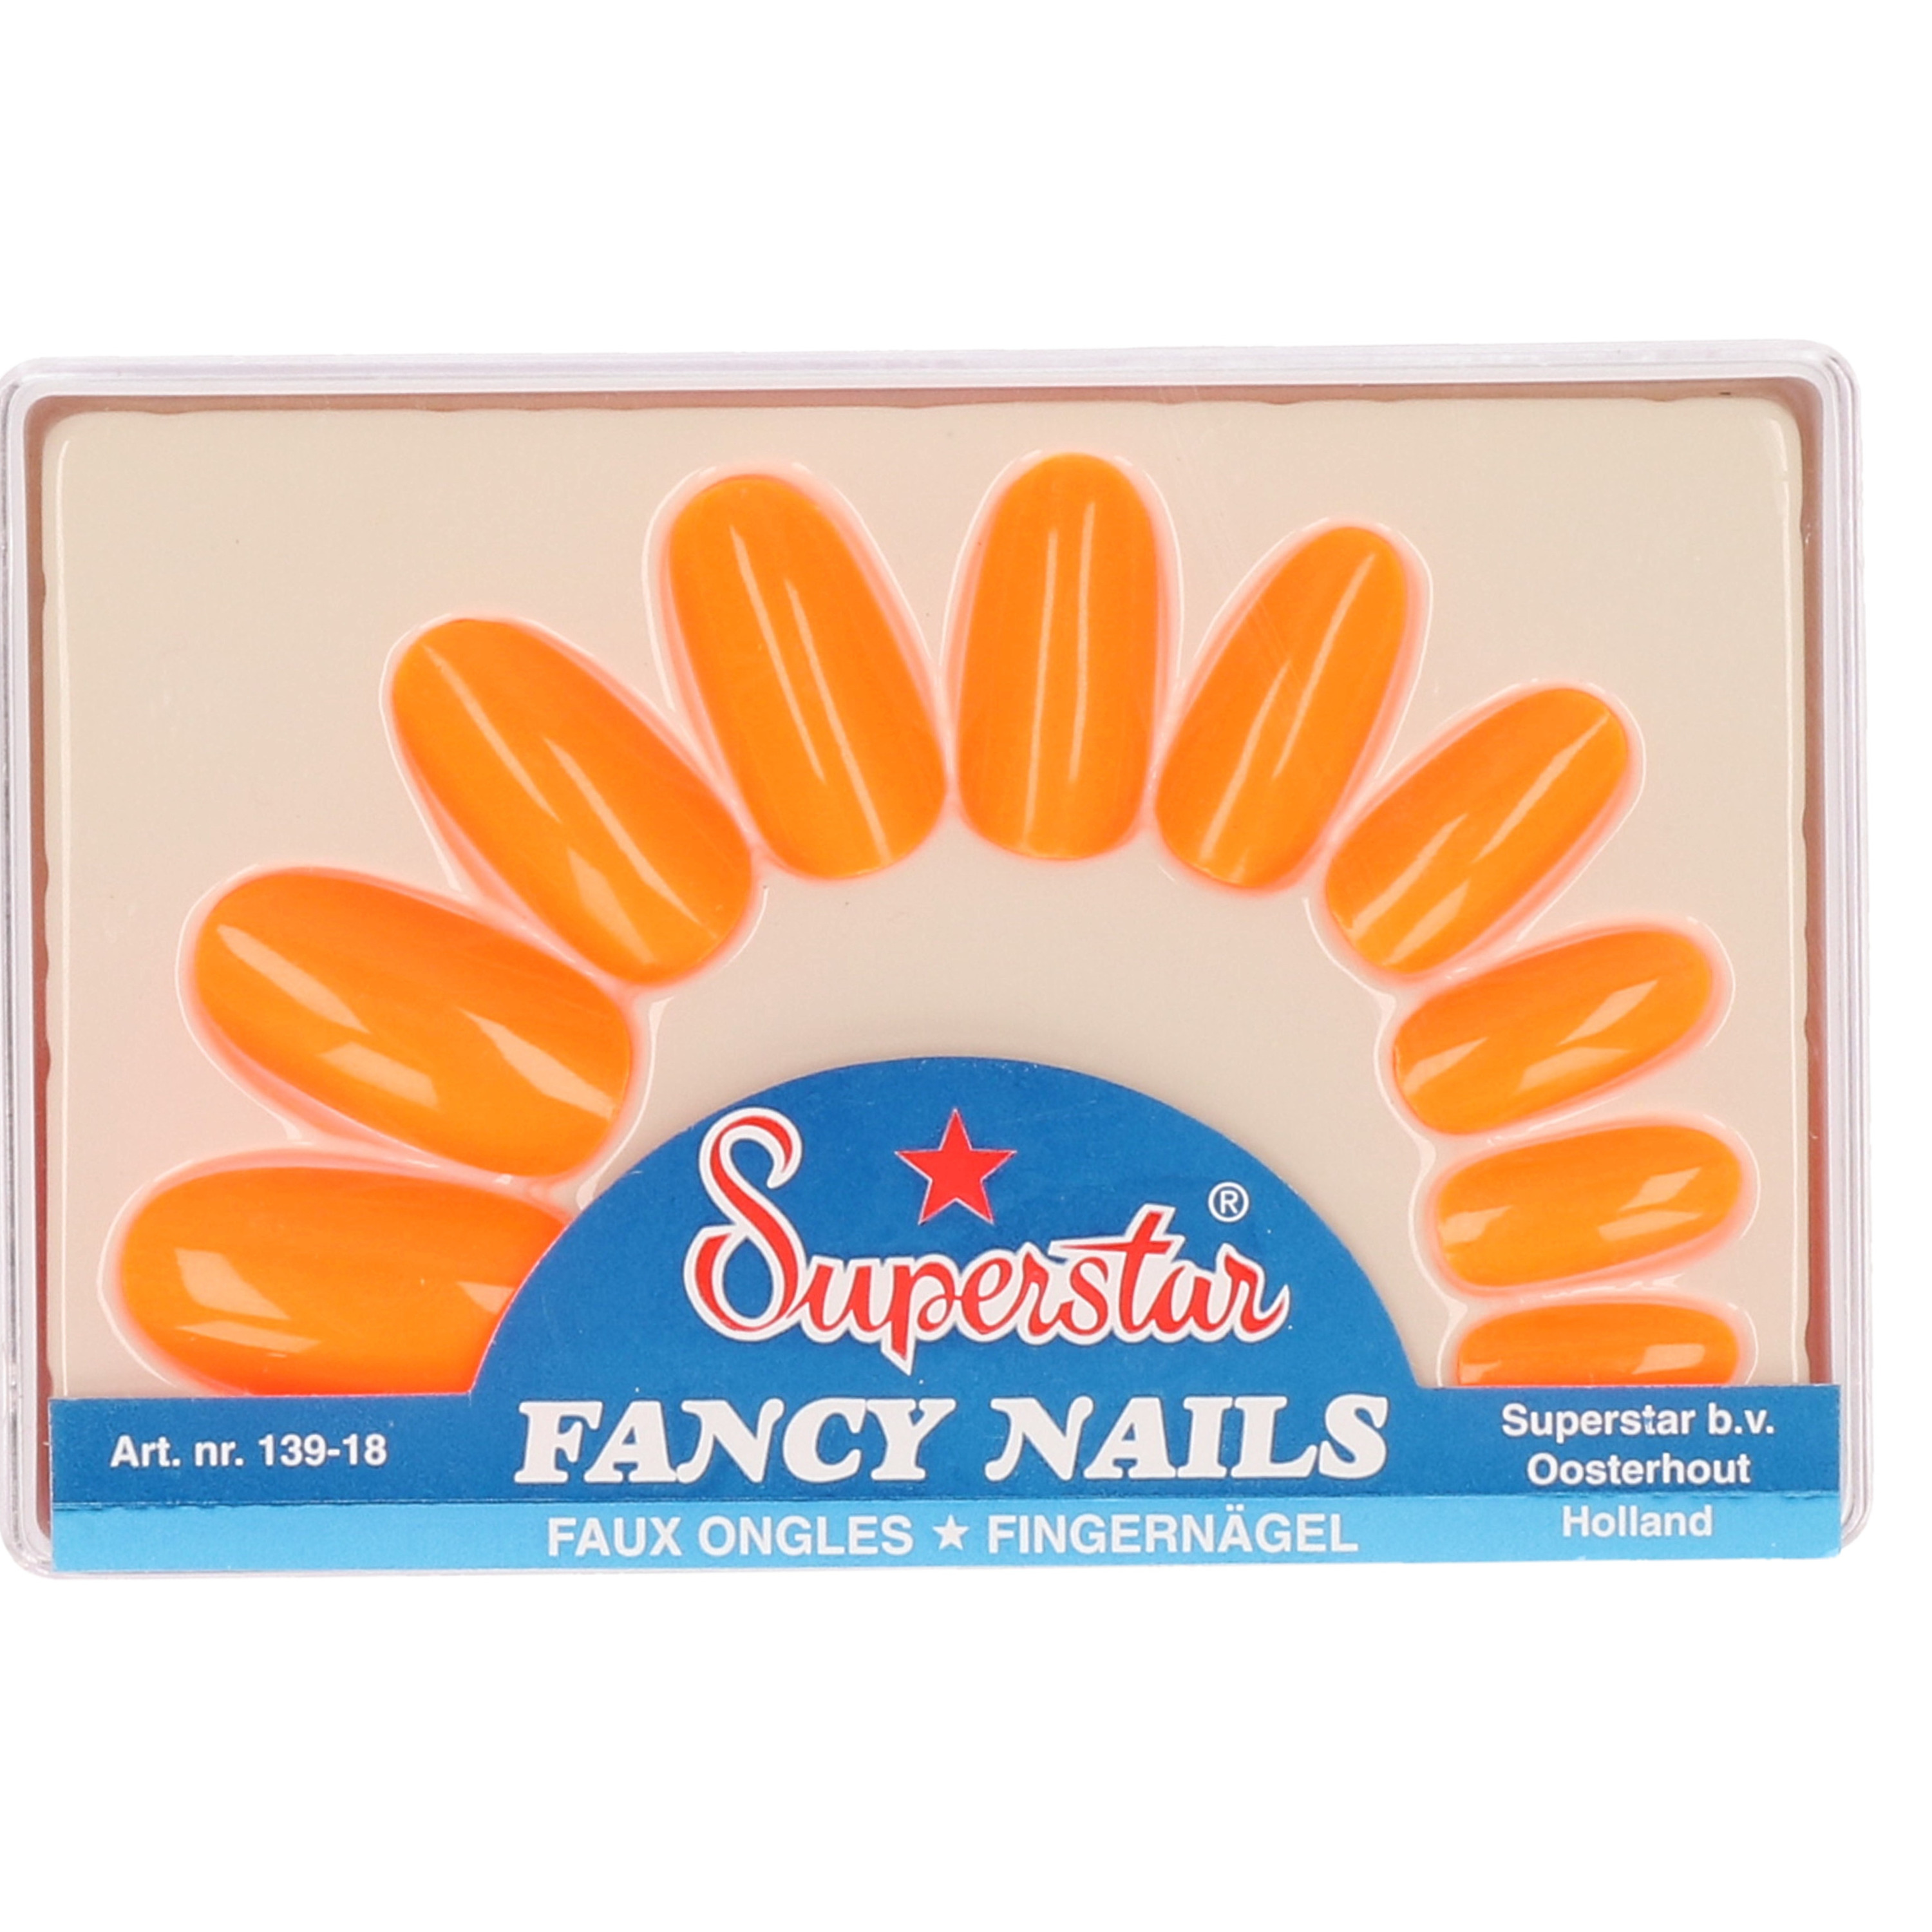 Pakketje met nagels in oranje kleur